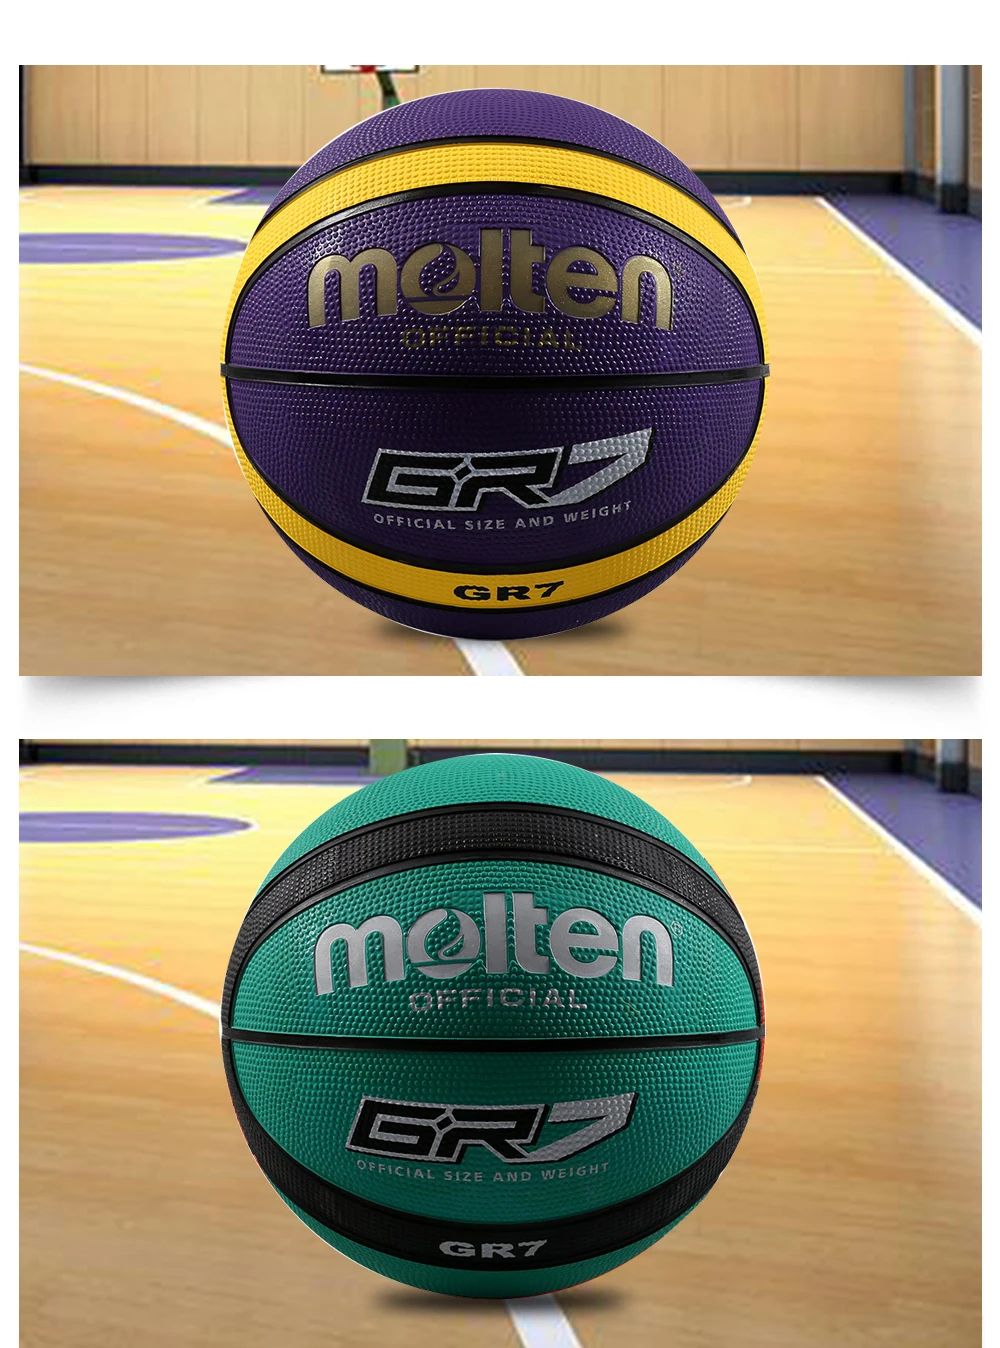 Расплавленный Баскетбольный мяч GR7 высокого качества из натуральной расплавленной Резины официальный размер 7 Размер 6 бесплатно с сетчатой сумкой+ иглой